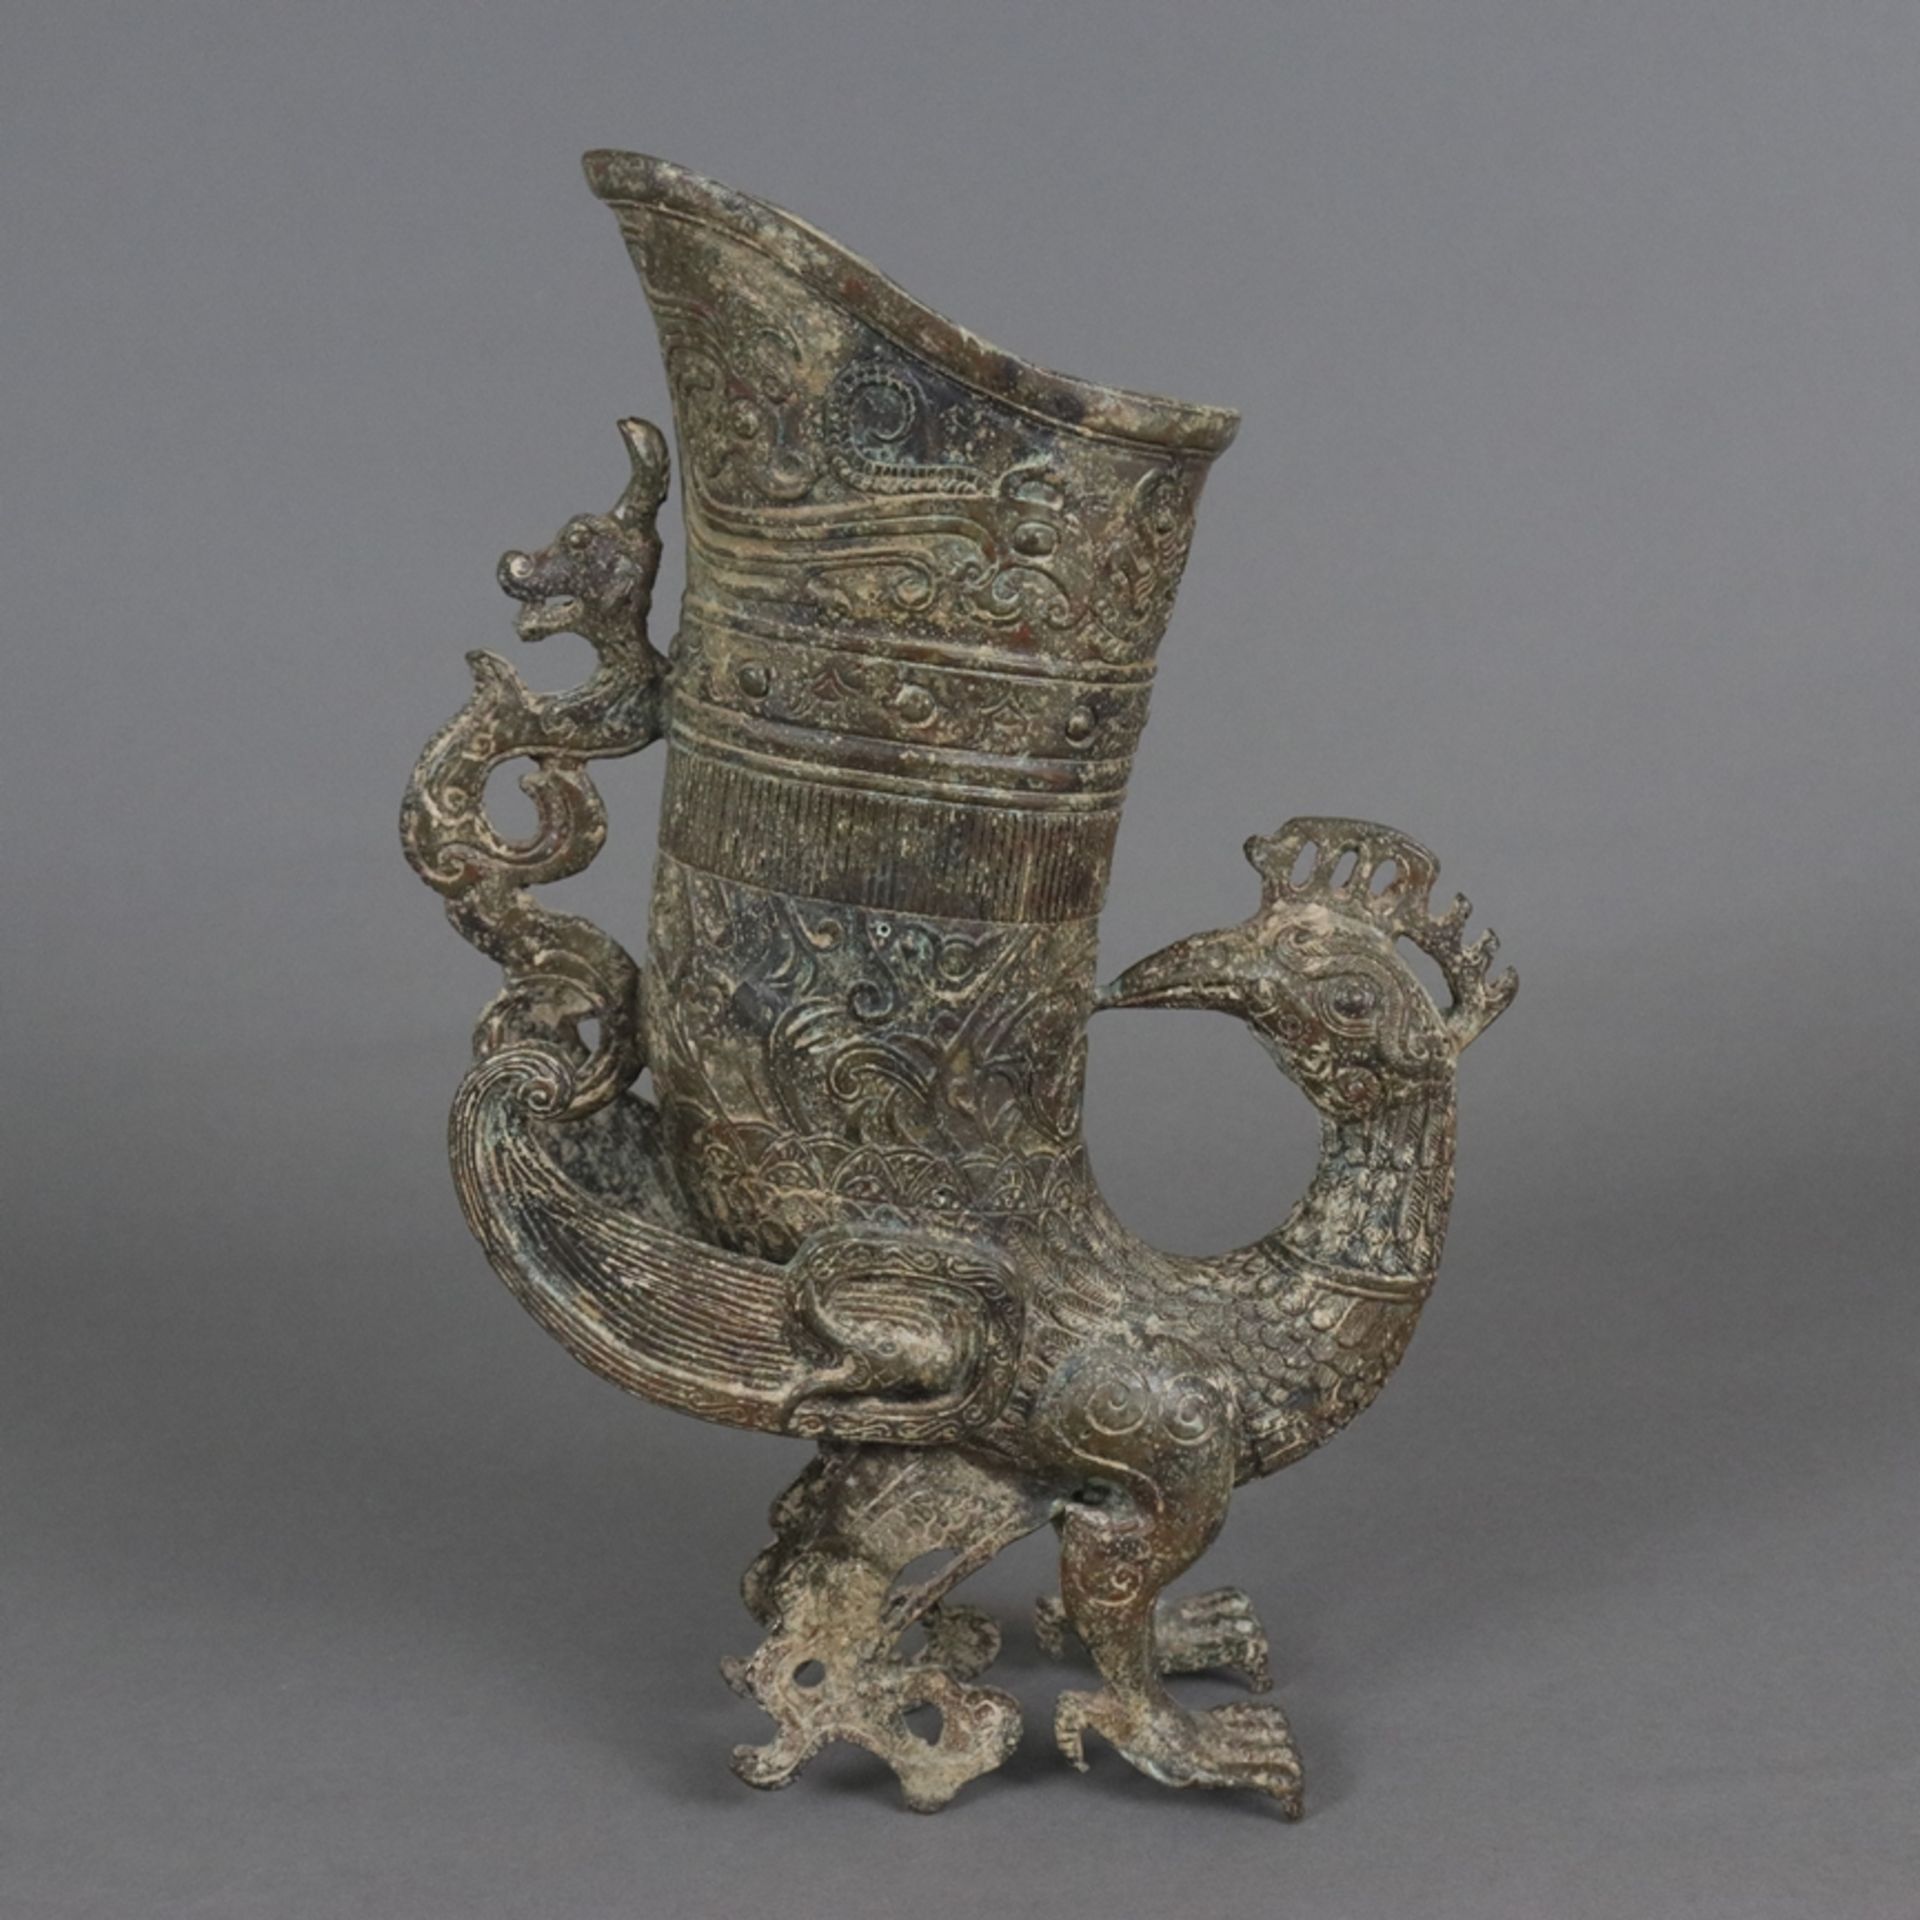 Gefäß in Vogelform - China, in der Art der „zun“-Gefäße aus der Shang-Zeit, gegossene Bronzelegieru - Image 7 of 8